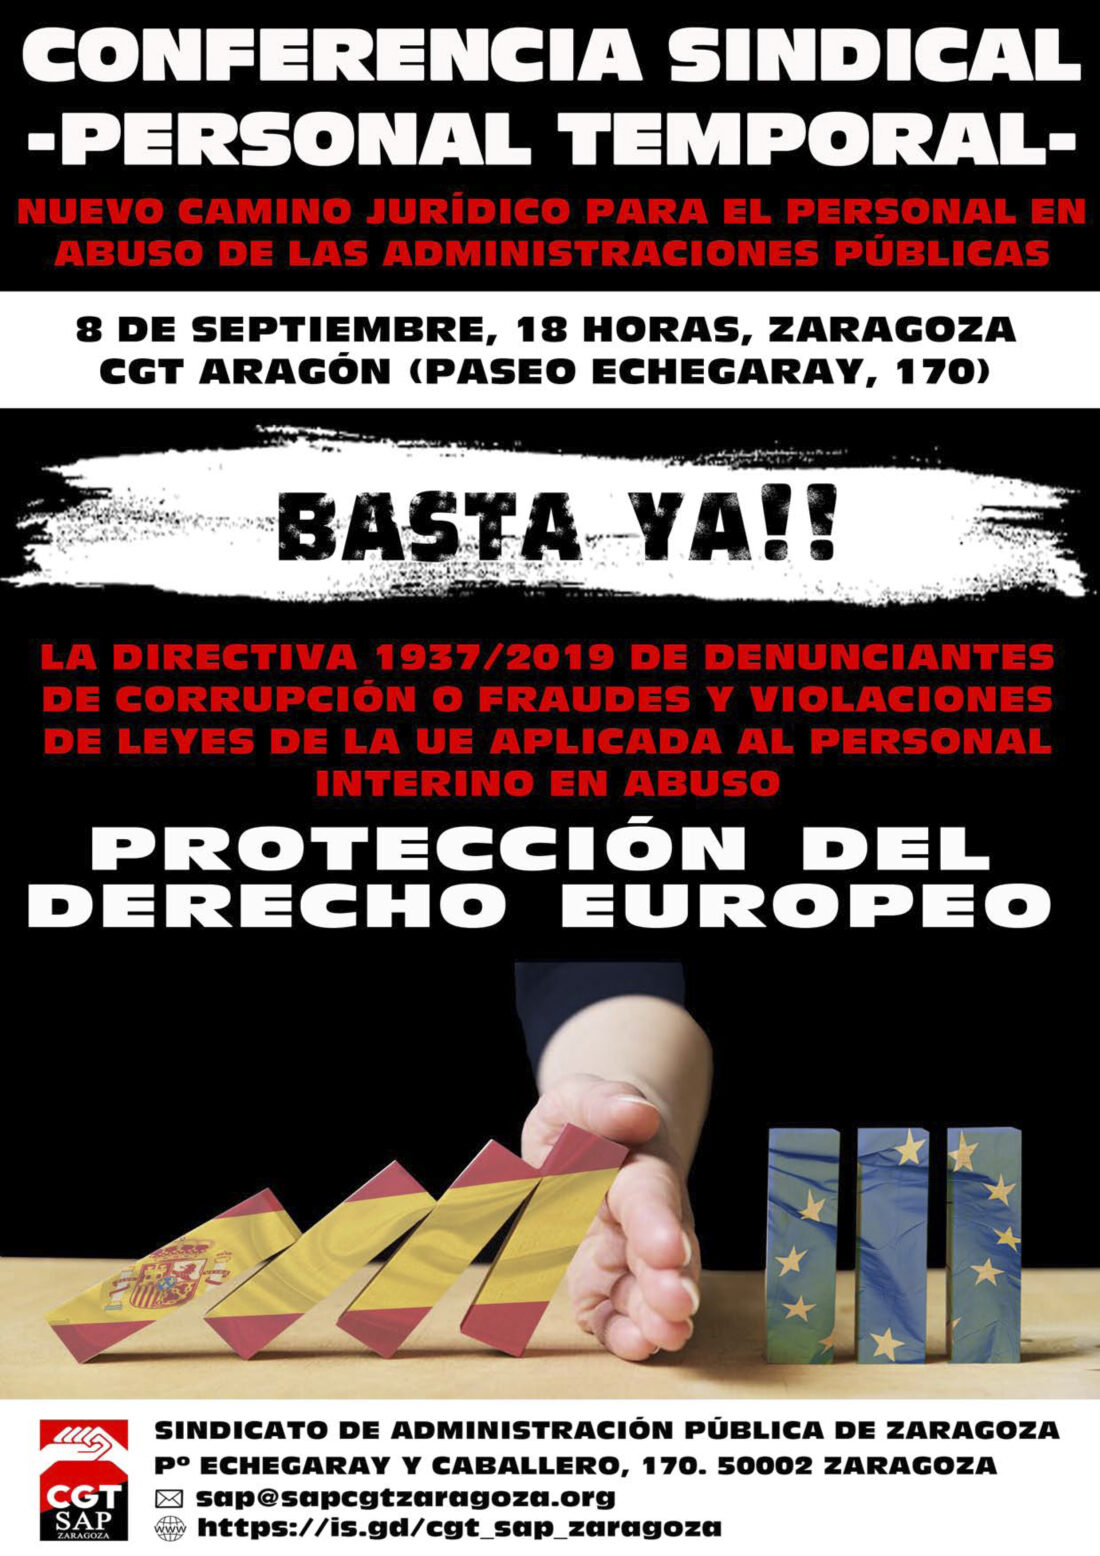 Conferencia 8 septiembre: Cómo les afecta la Directiva 1937/2019 de denunciantes de corrupción o fraudes y violaciones de leyes de la UE a los trabajadores públicos en abuso de temporalidad